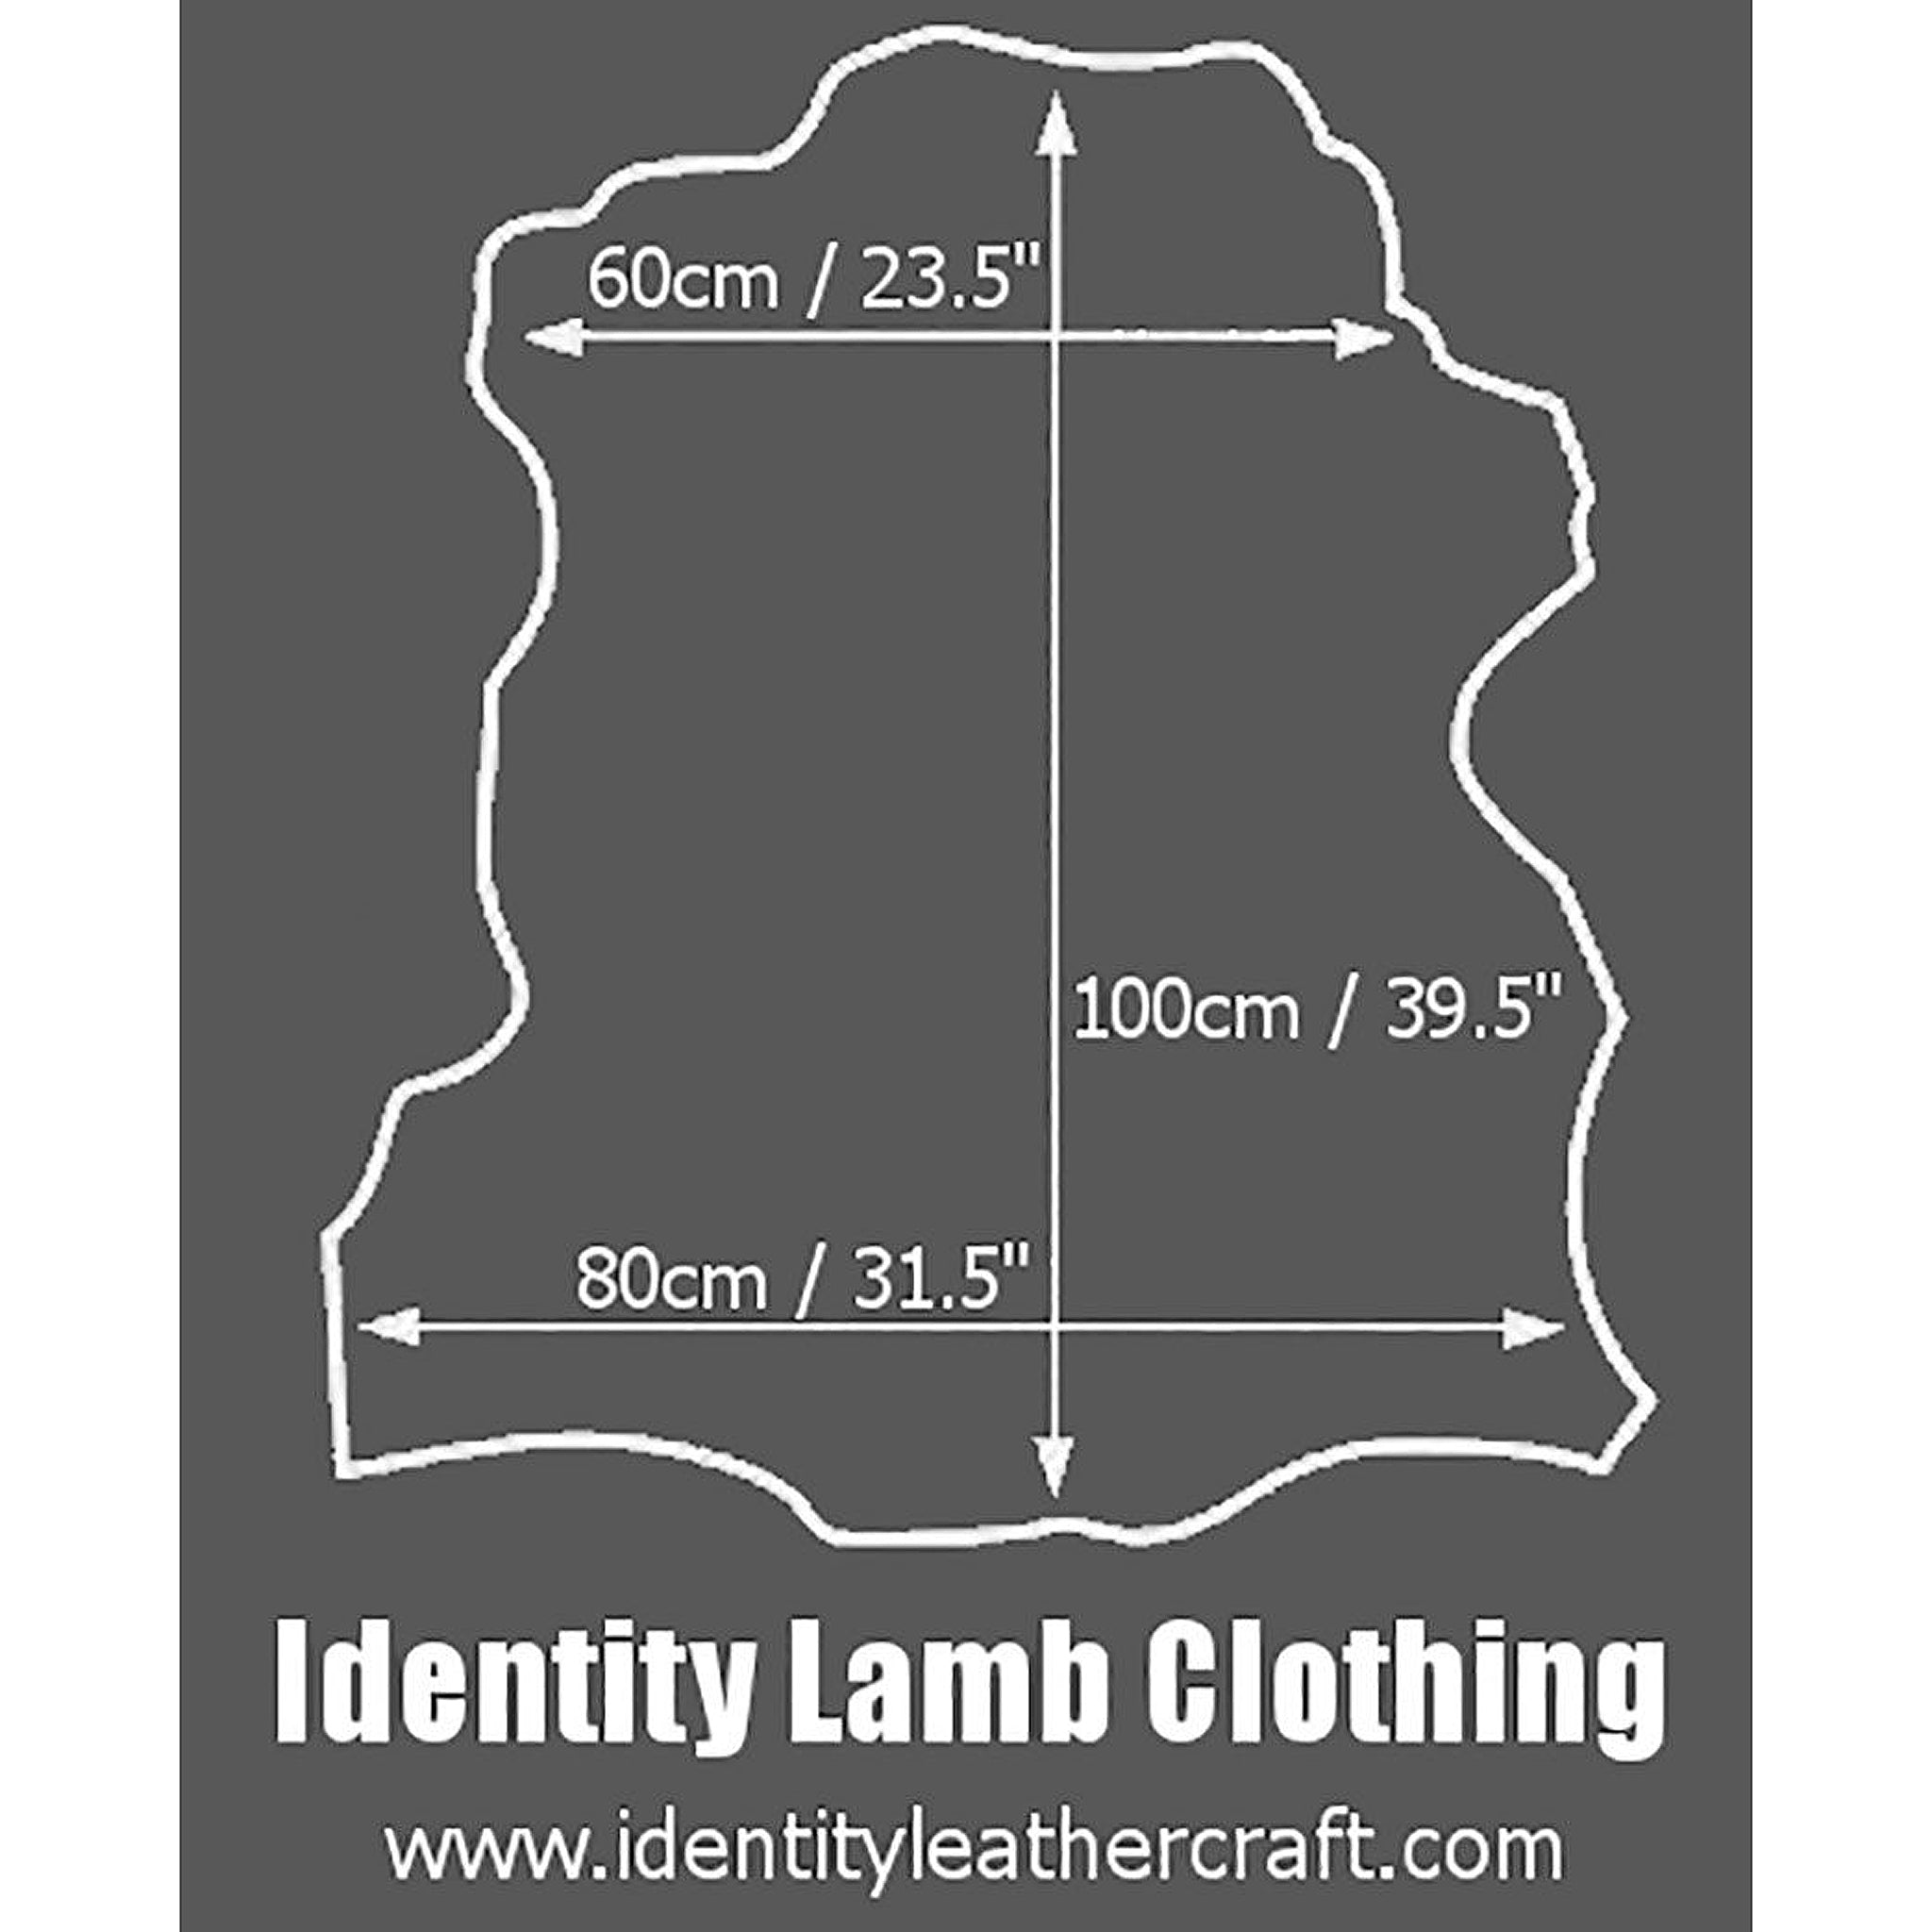 Identity Leathercraft Pearlised Lamb Clothing Leather Size Guide 